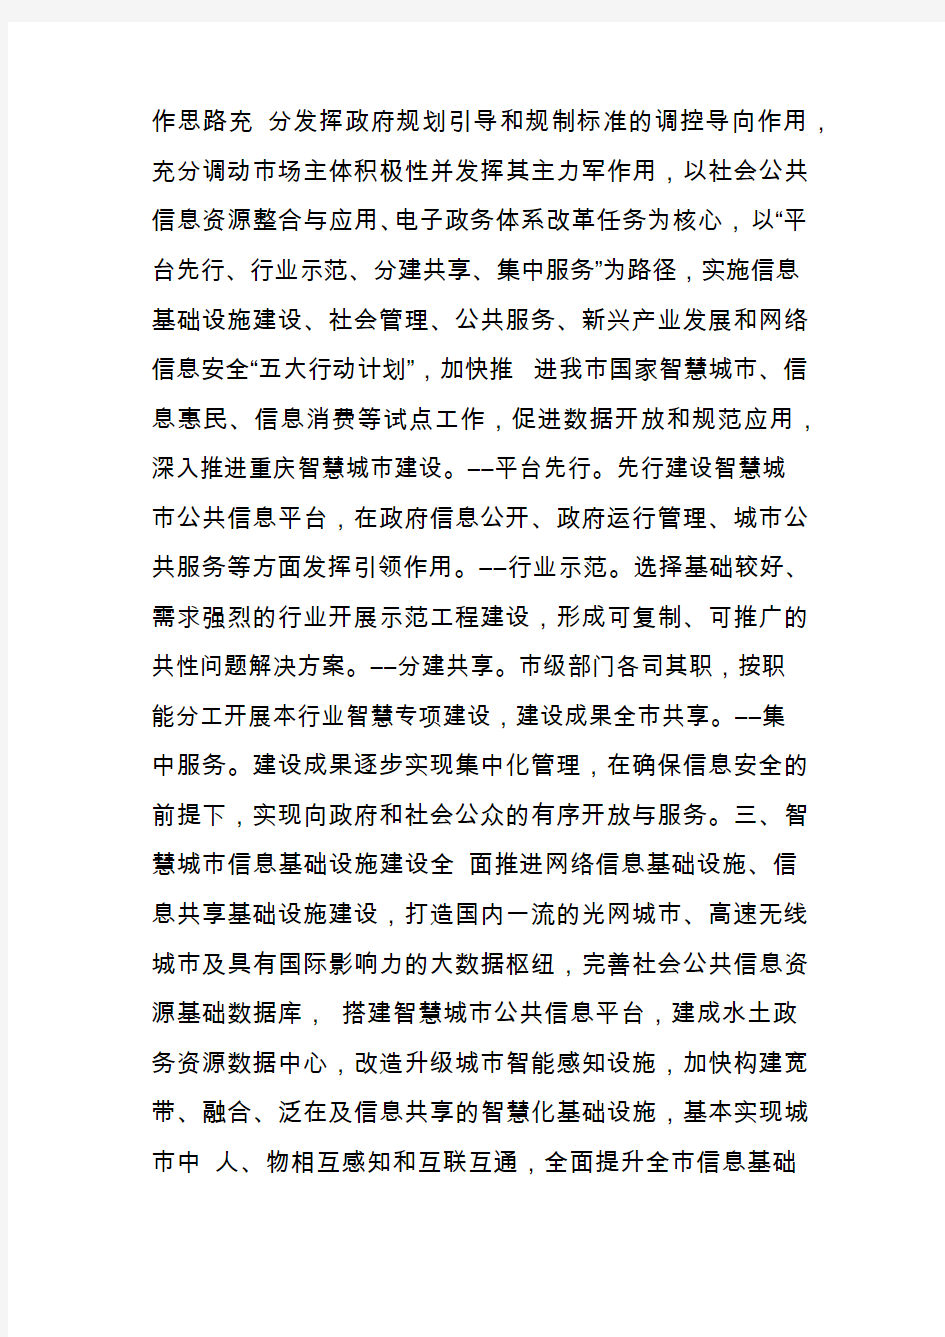 重庆市深入推进智慧城市建设总体方案(2015―2020